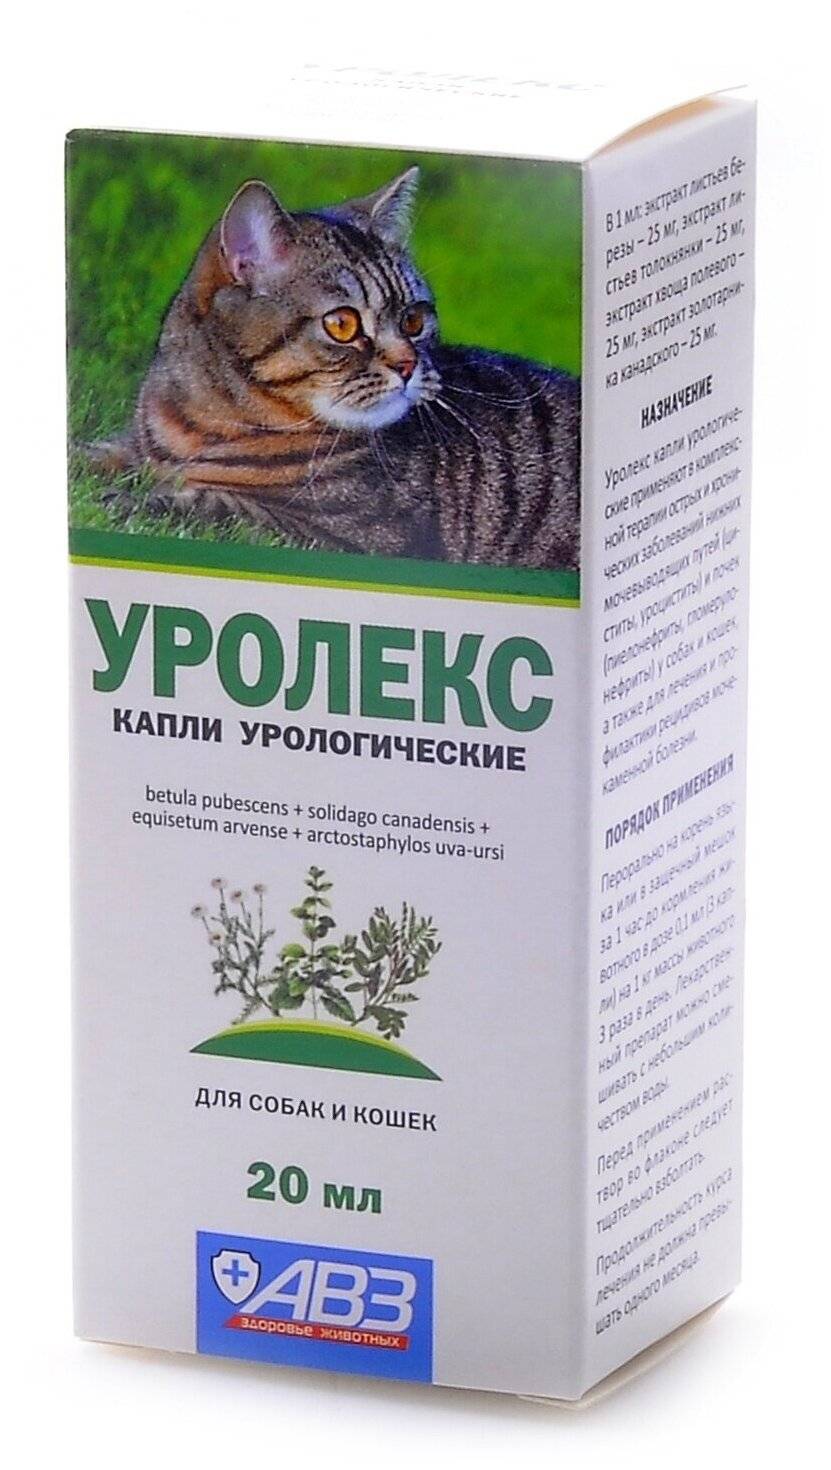 Инструкция по применению препарата «уролекс» для лечения кошек, противопоказания к использованию